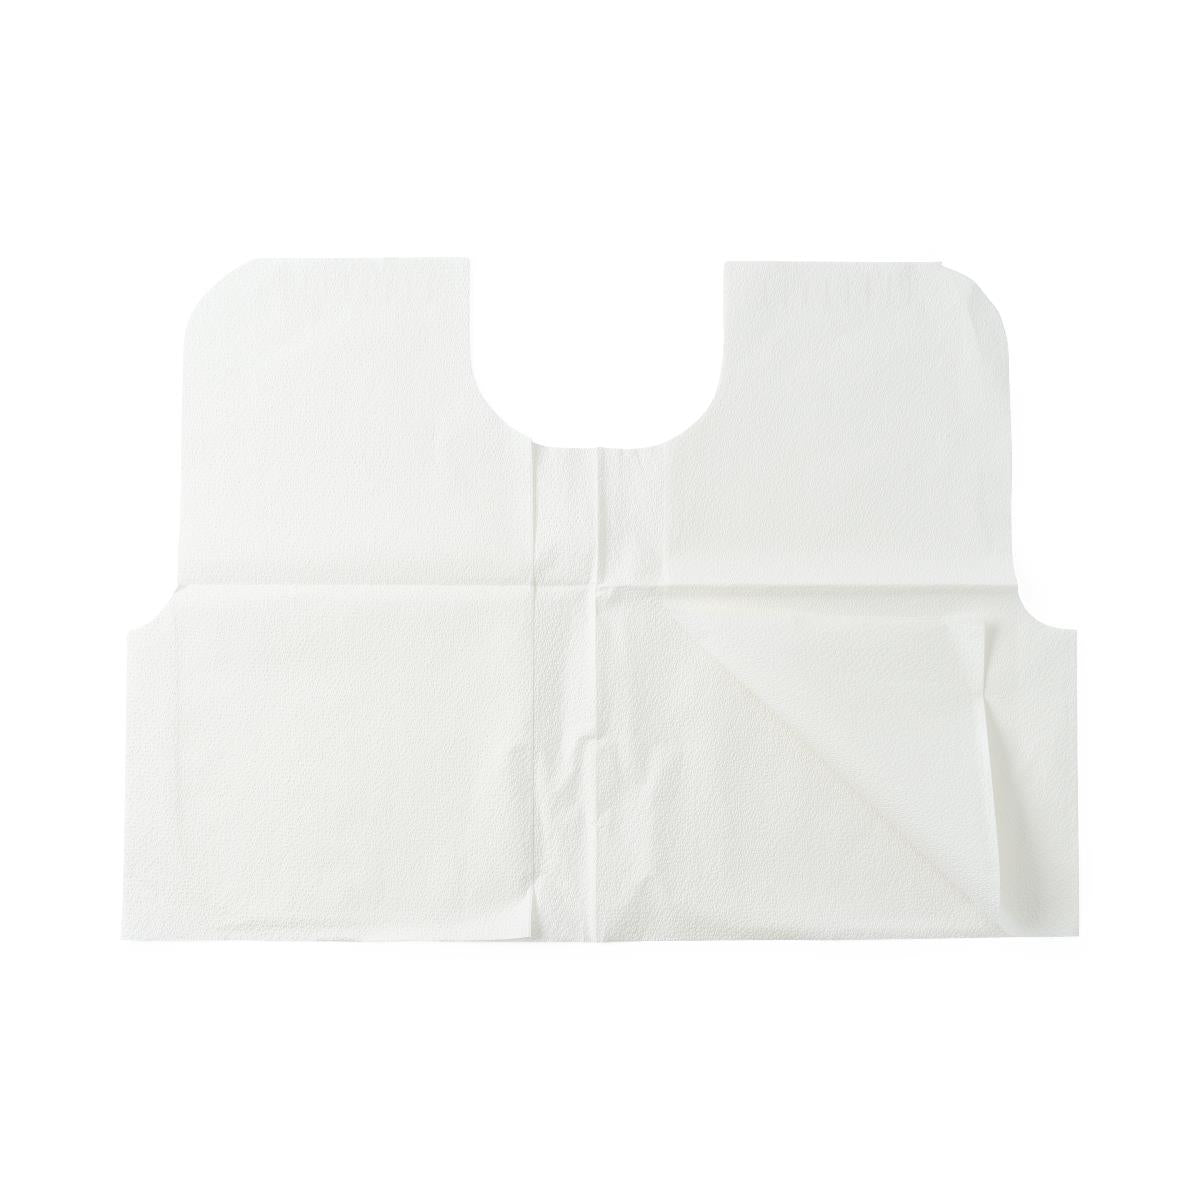 Medline Tissue / Poly / Tissue Exam Capes 30x21 White 100/cs NON24248